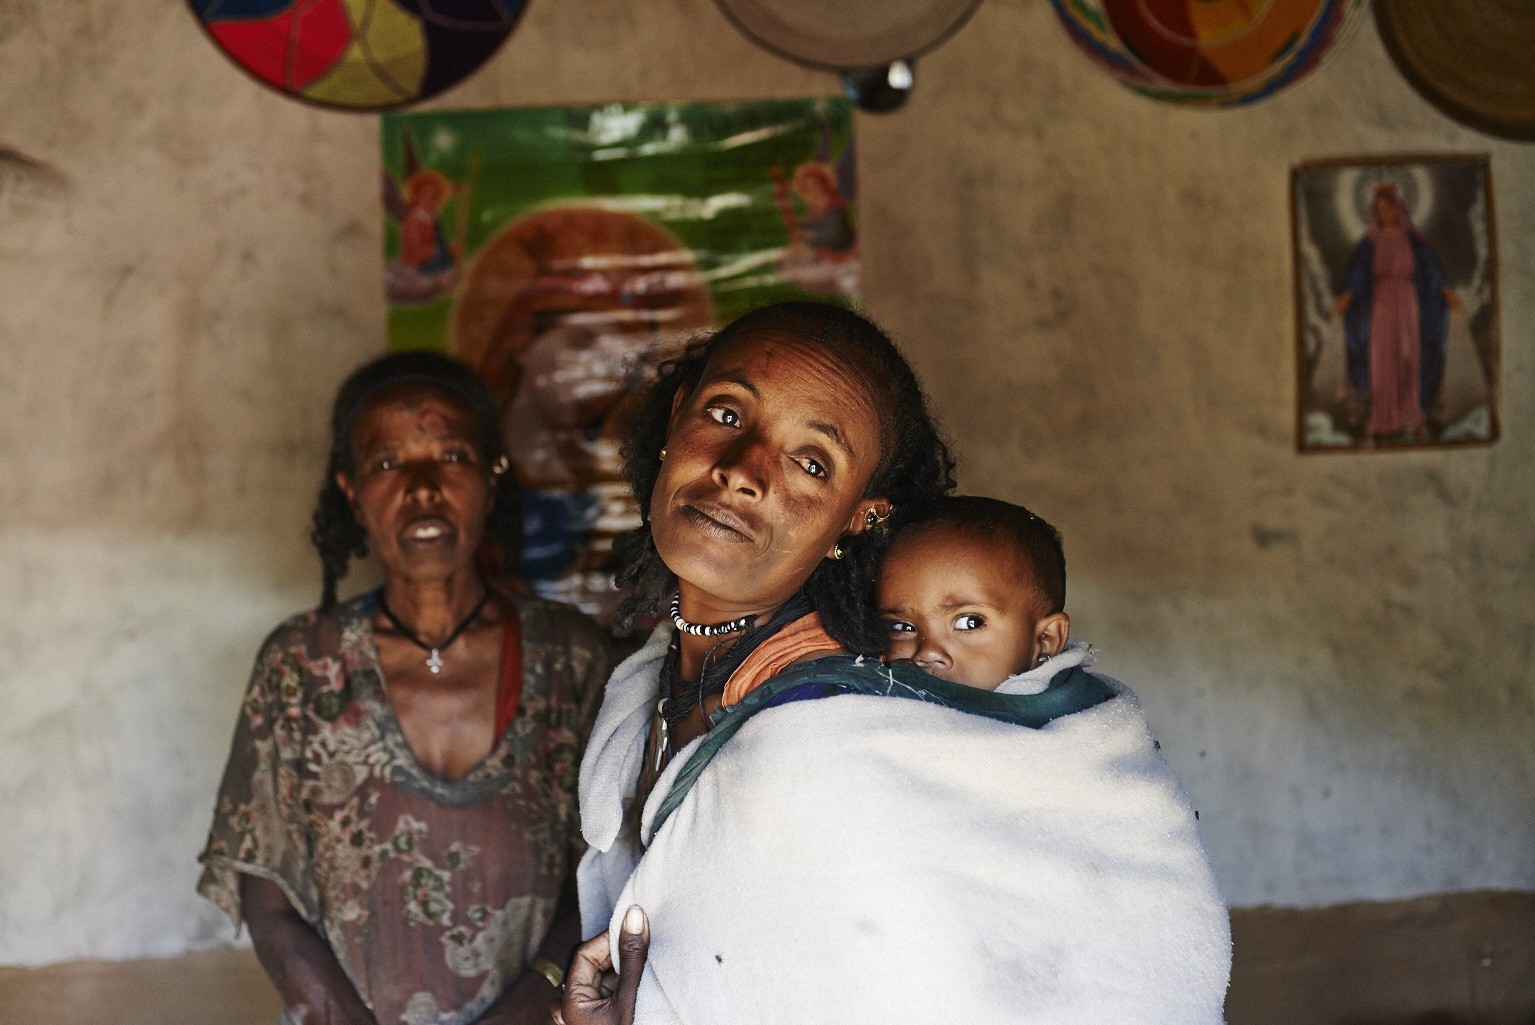 Äthiopien © Aleksandra Pawloff